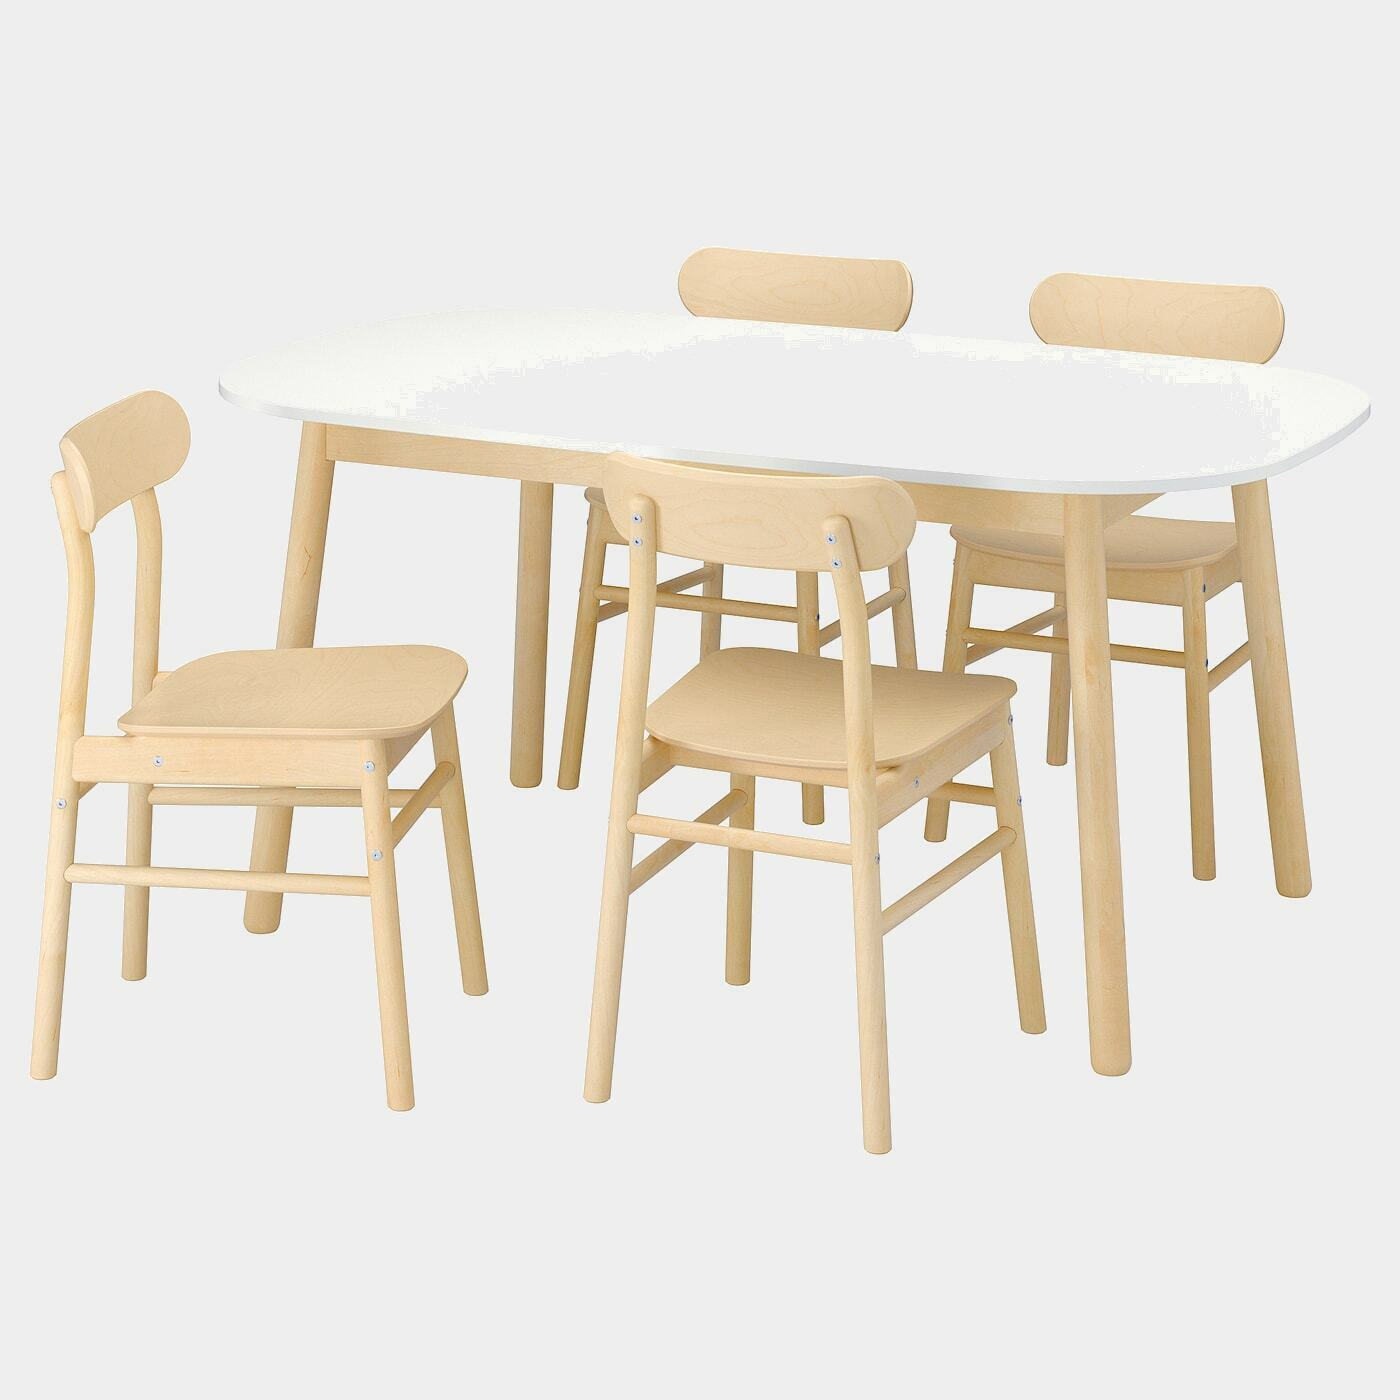 VEDBO / RÖNNINGE Tisch und 4 Stühle  - Essplatzgruppe - Möbel Ideen für dein Zuhause von Home Trends. Möbel Trends von Social Media Influencer für dein Skandi Zuhause.